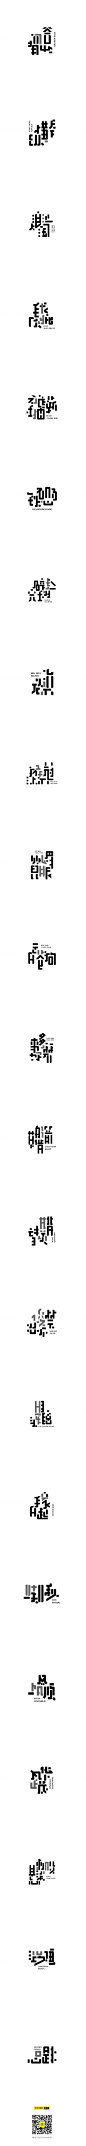 墨体的可能性-字体传奇网-中国首个字体品牌设计师交流网